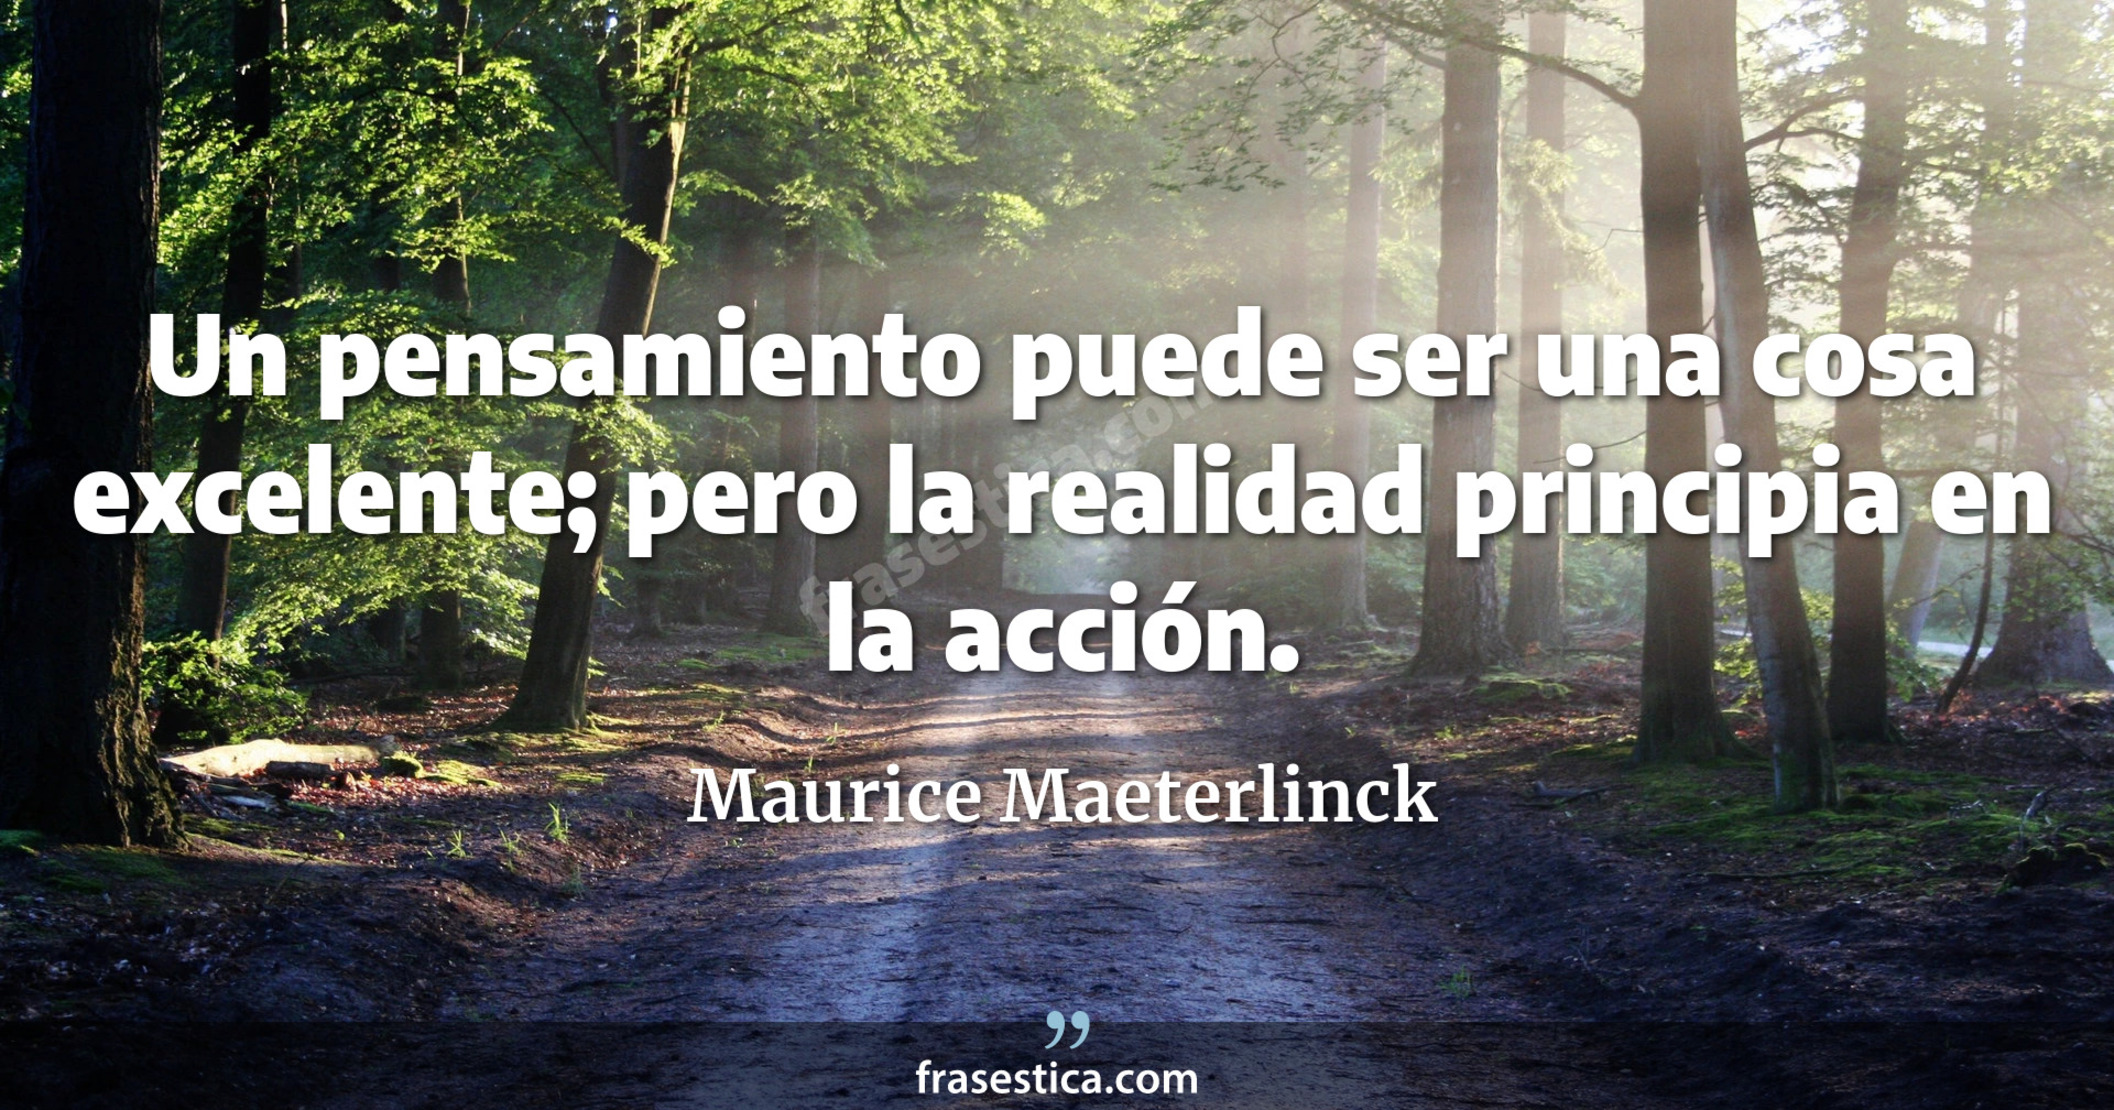 Un pensamiento puede ser una cosa excelente; pero la realidad principia en la acción. - Maurice Maeterlinck